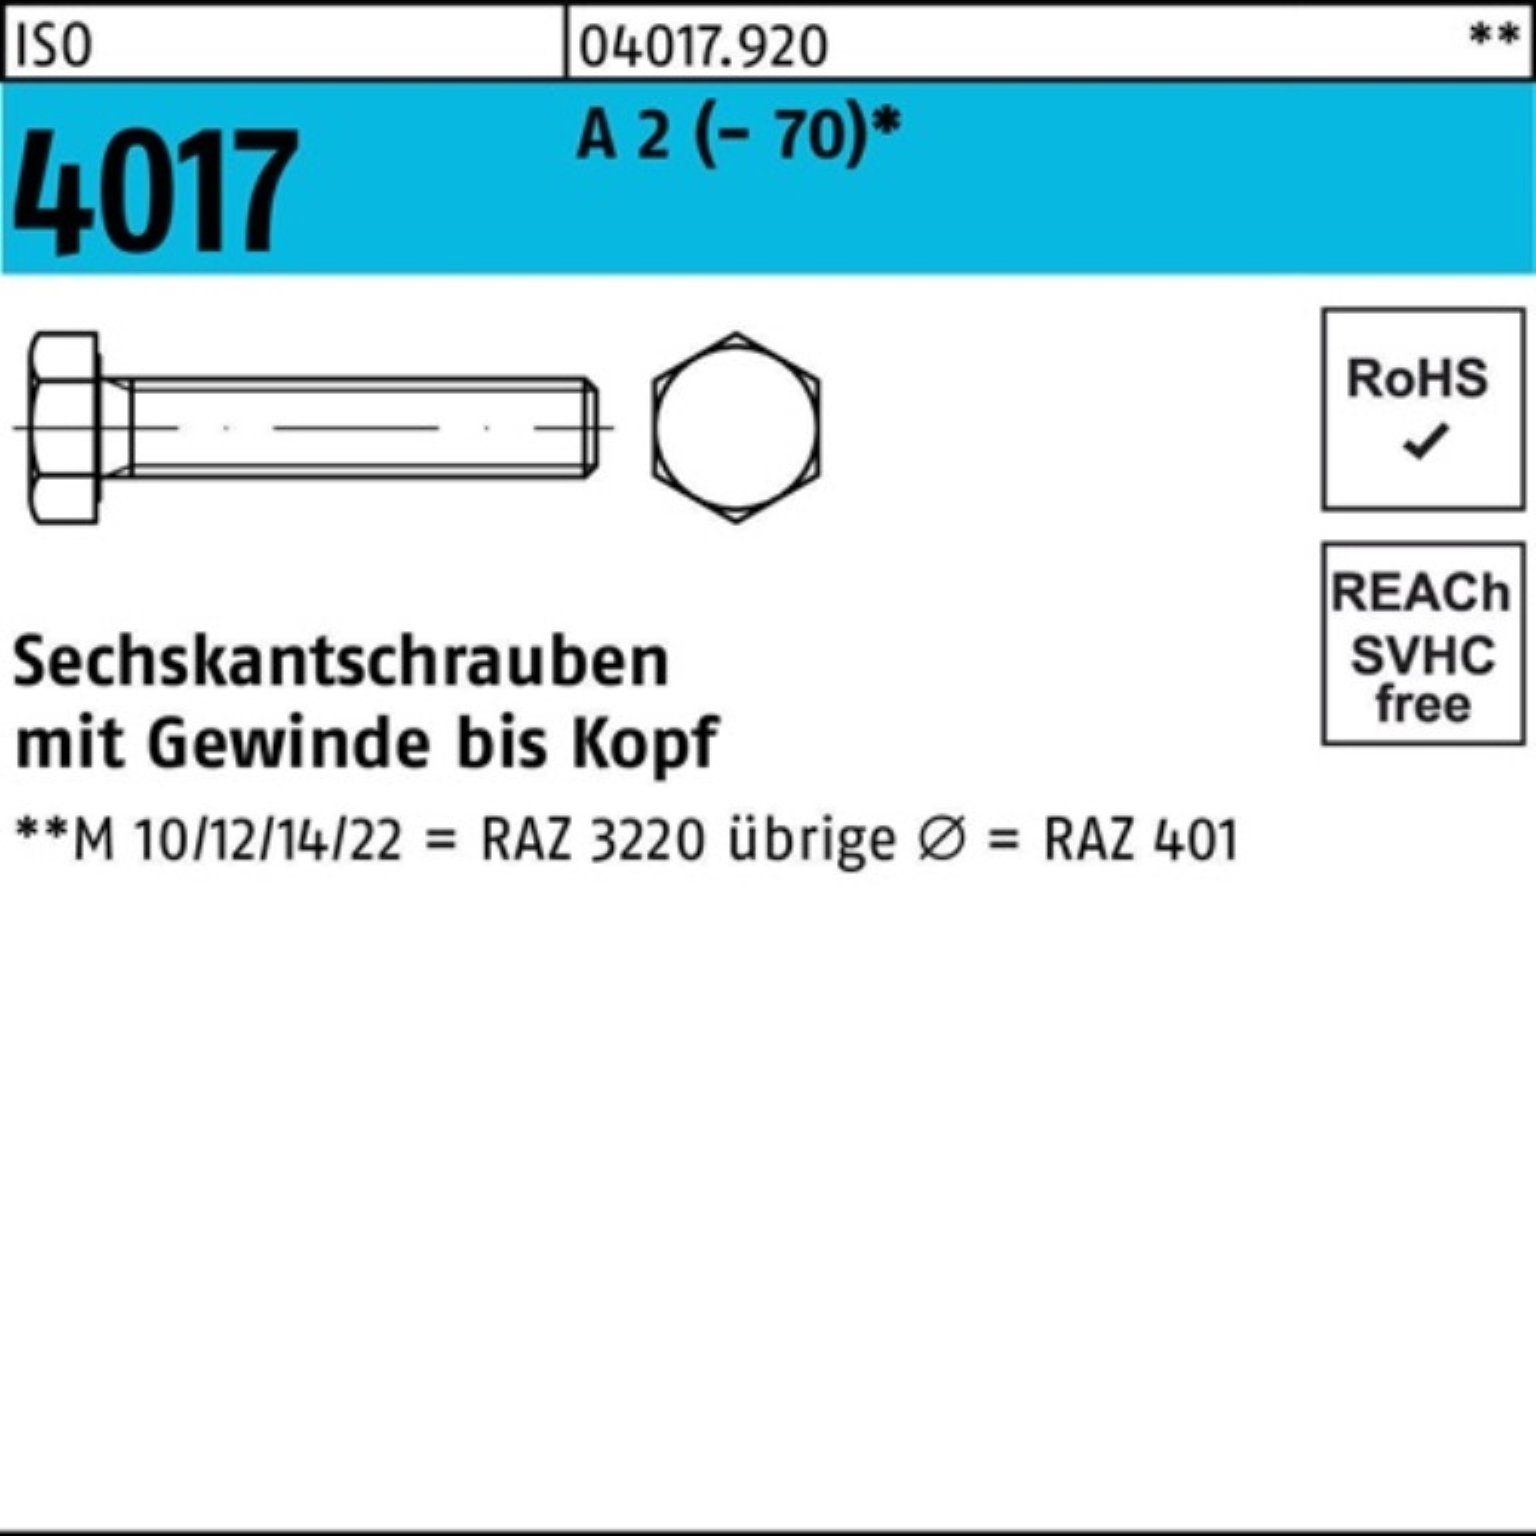 Bufab Sechskantschraube A 100er Stück 2 (70) M16x 50 VG 4017 Pack 50 Sechskantschraube ISO